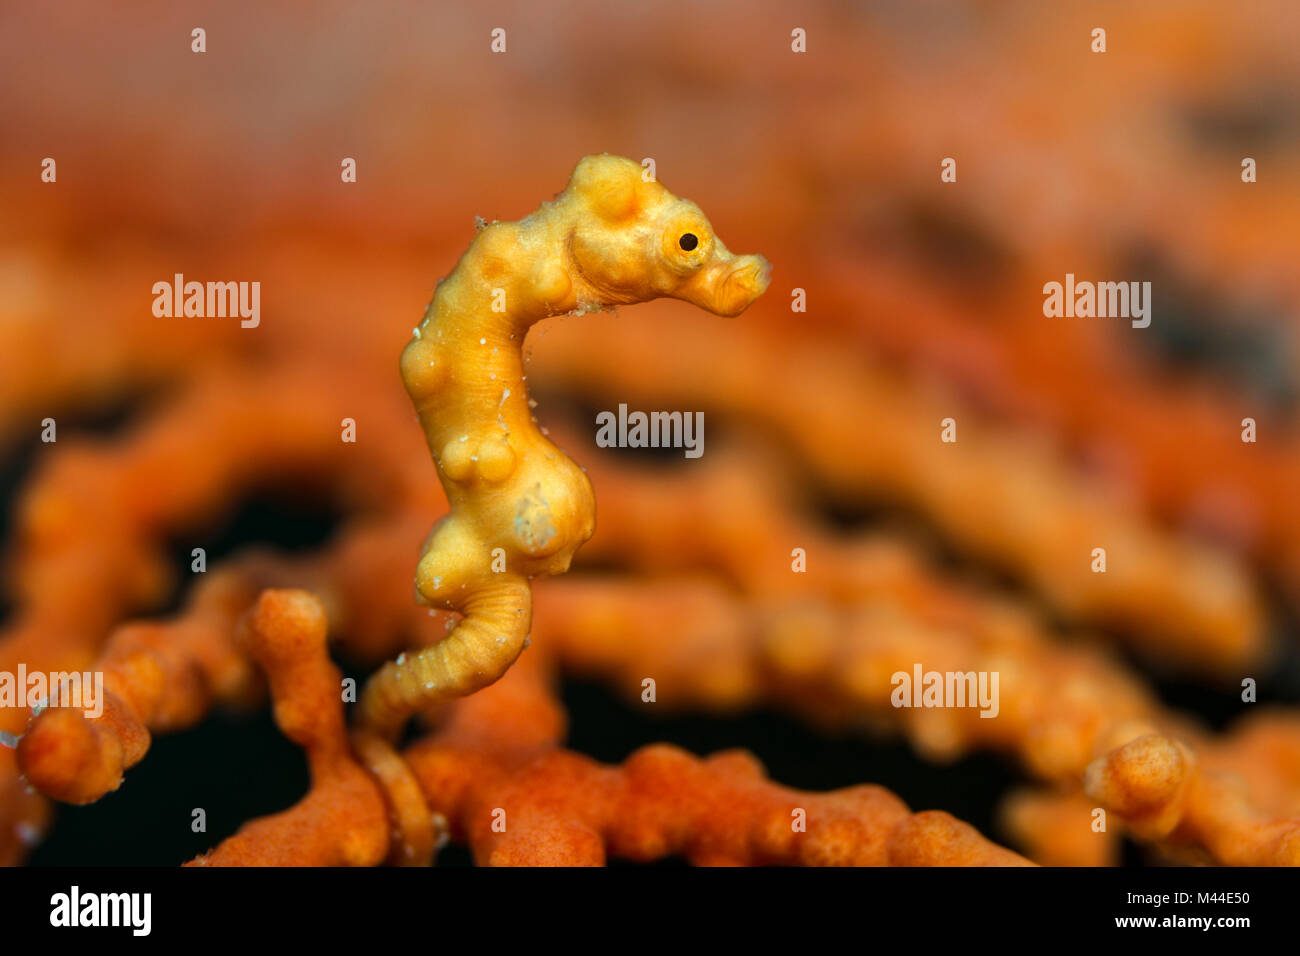 Hippocampe pygmée (Hippocampus denise) dans le corail. Pacifique occidental, Raja Ampat, Indonésie Banque D'Images